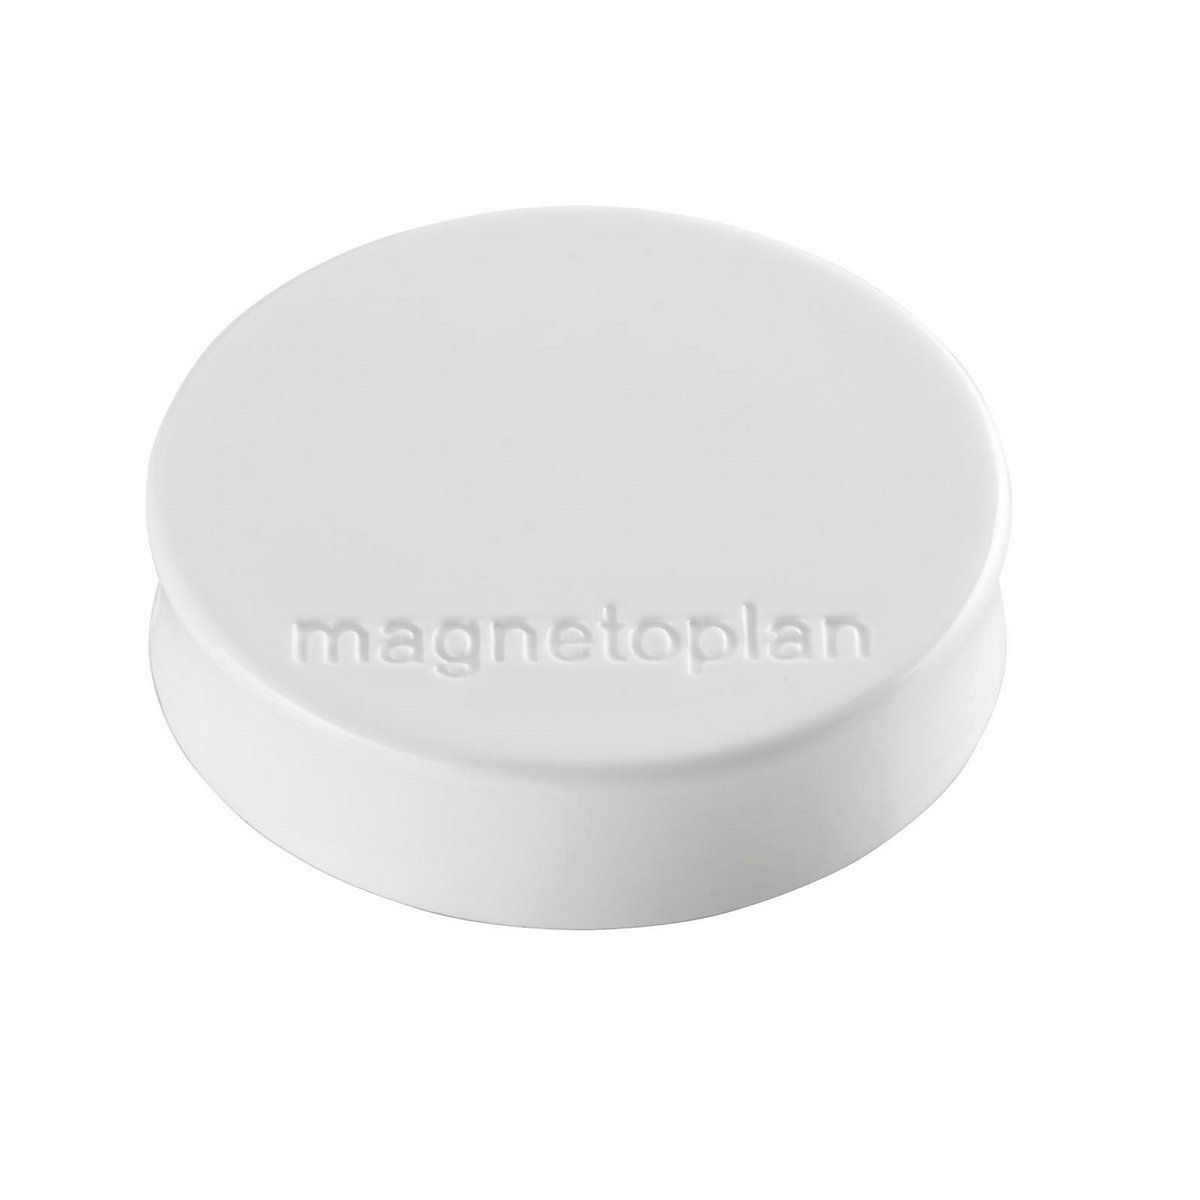 Ergonomische magneet - magnetoplan